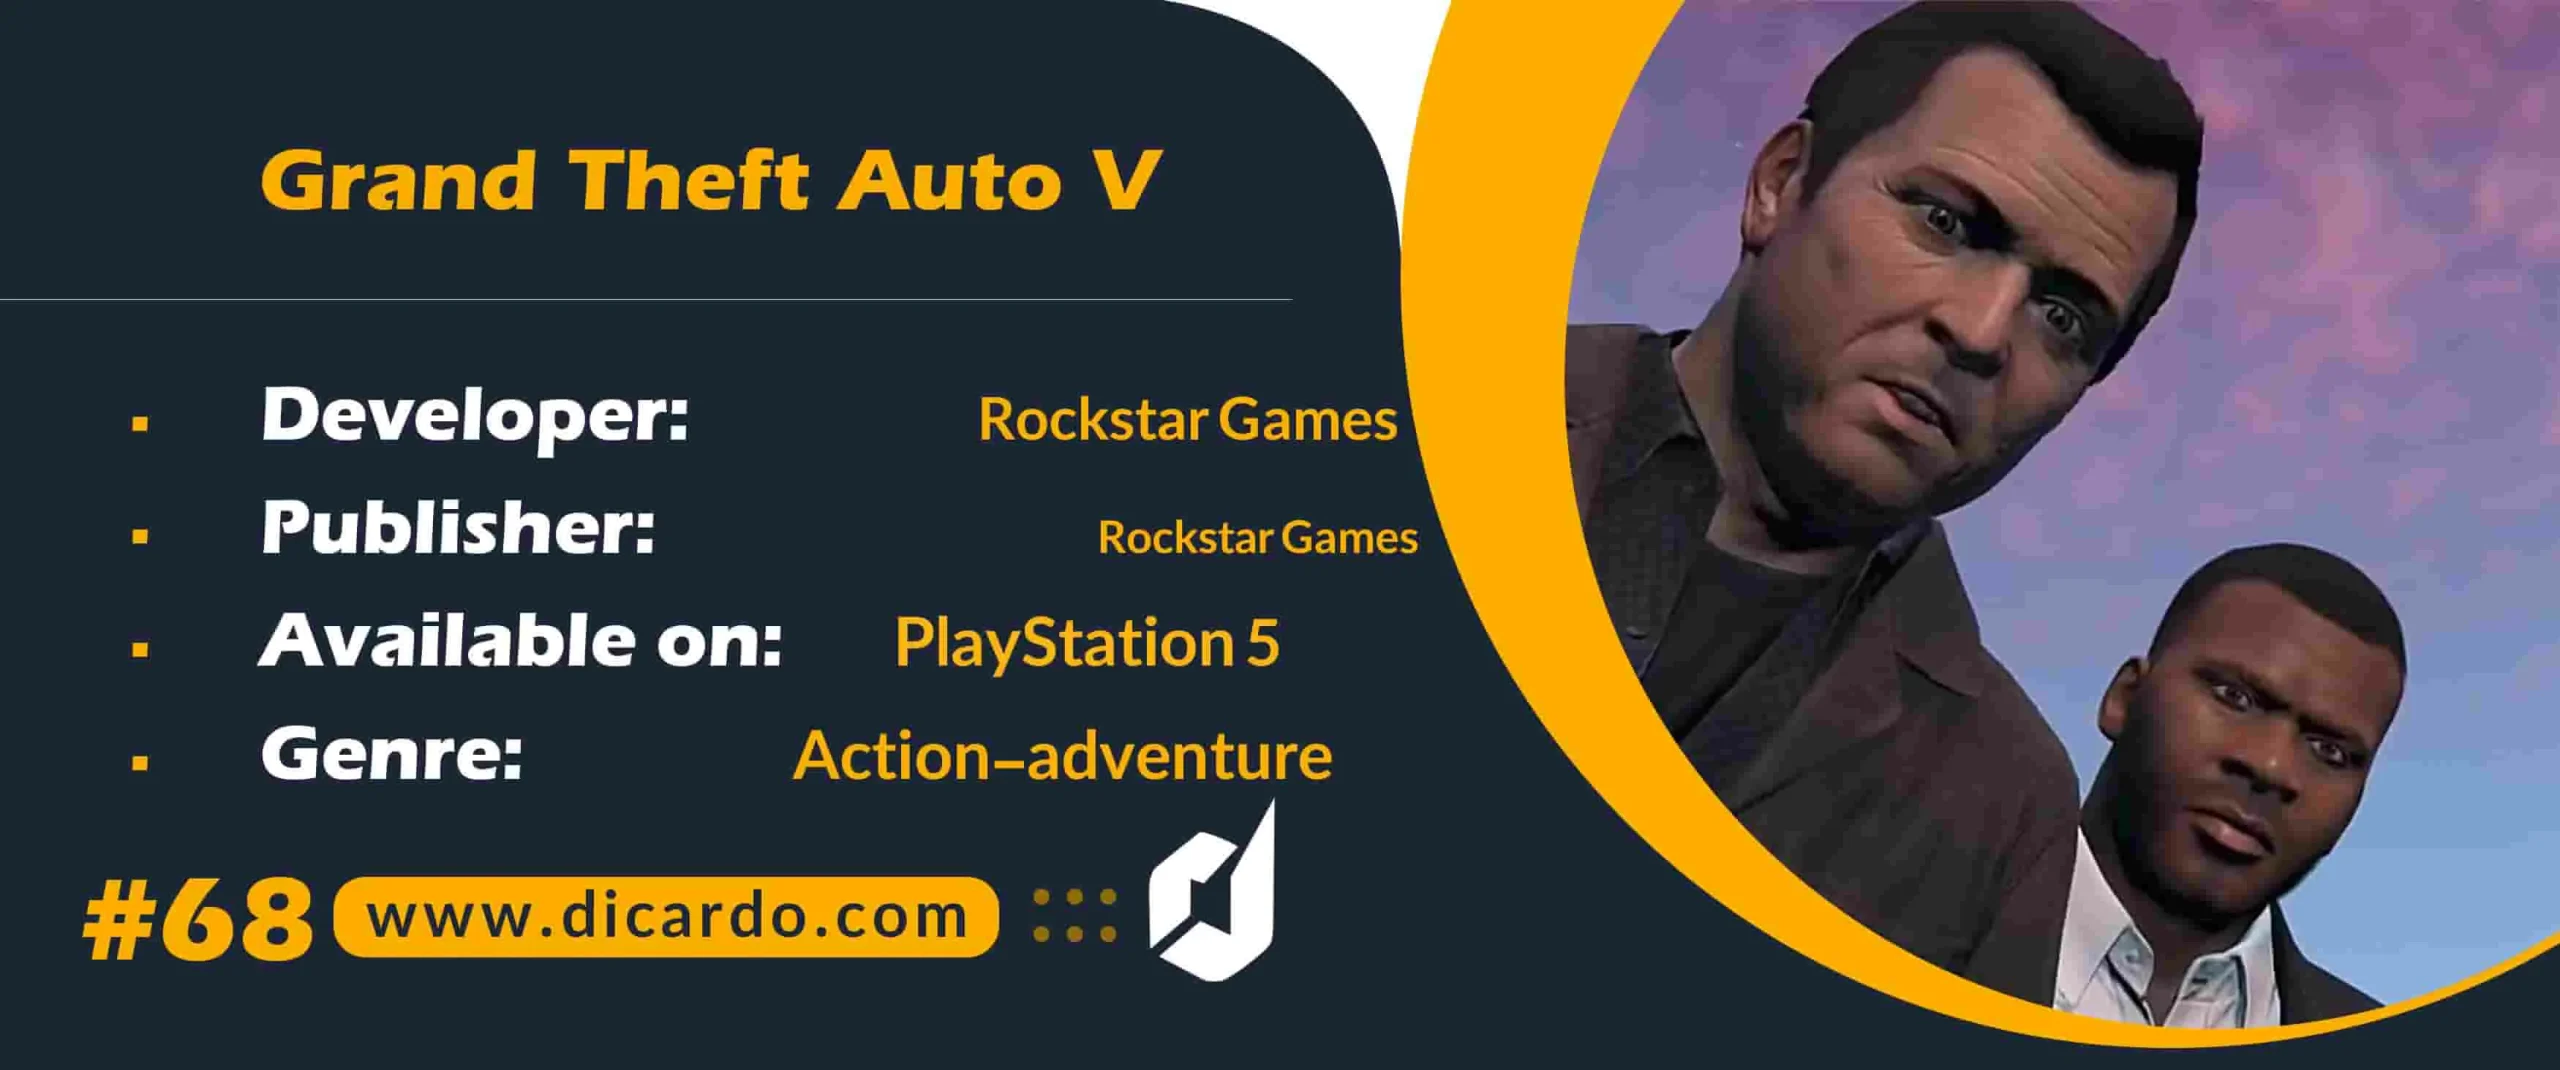 #68 گرند تفت اوتو 5 Grand Theft Auto V از بهترین بازیهای پلی استیشن 5 در ژانر اکشن ماجراجویی